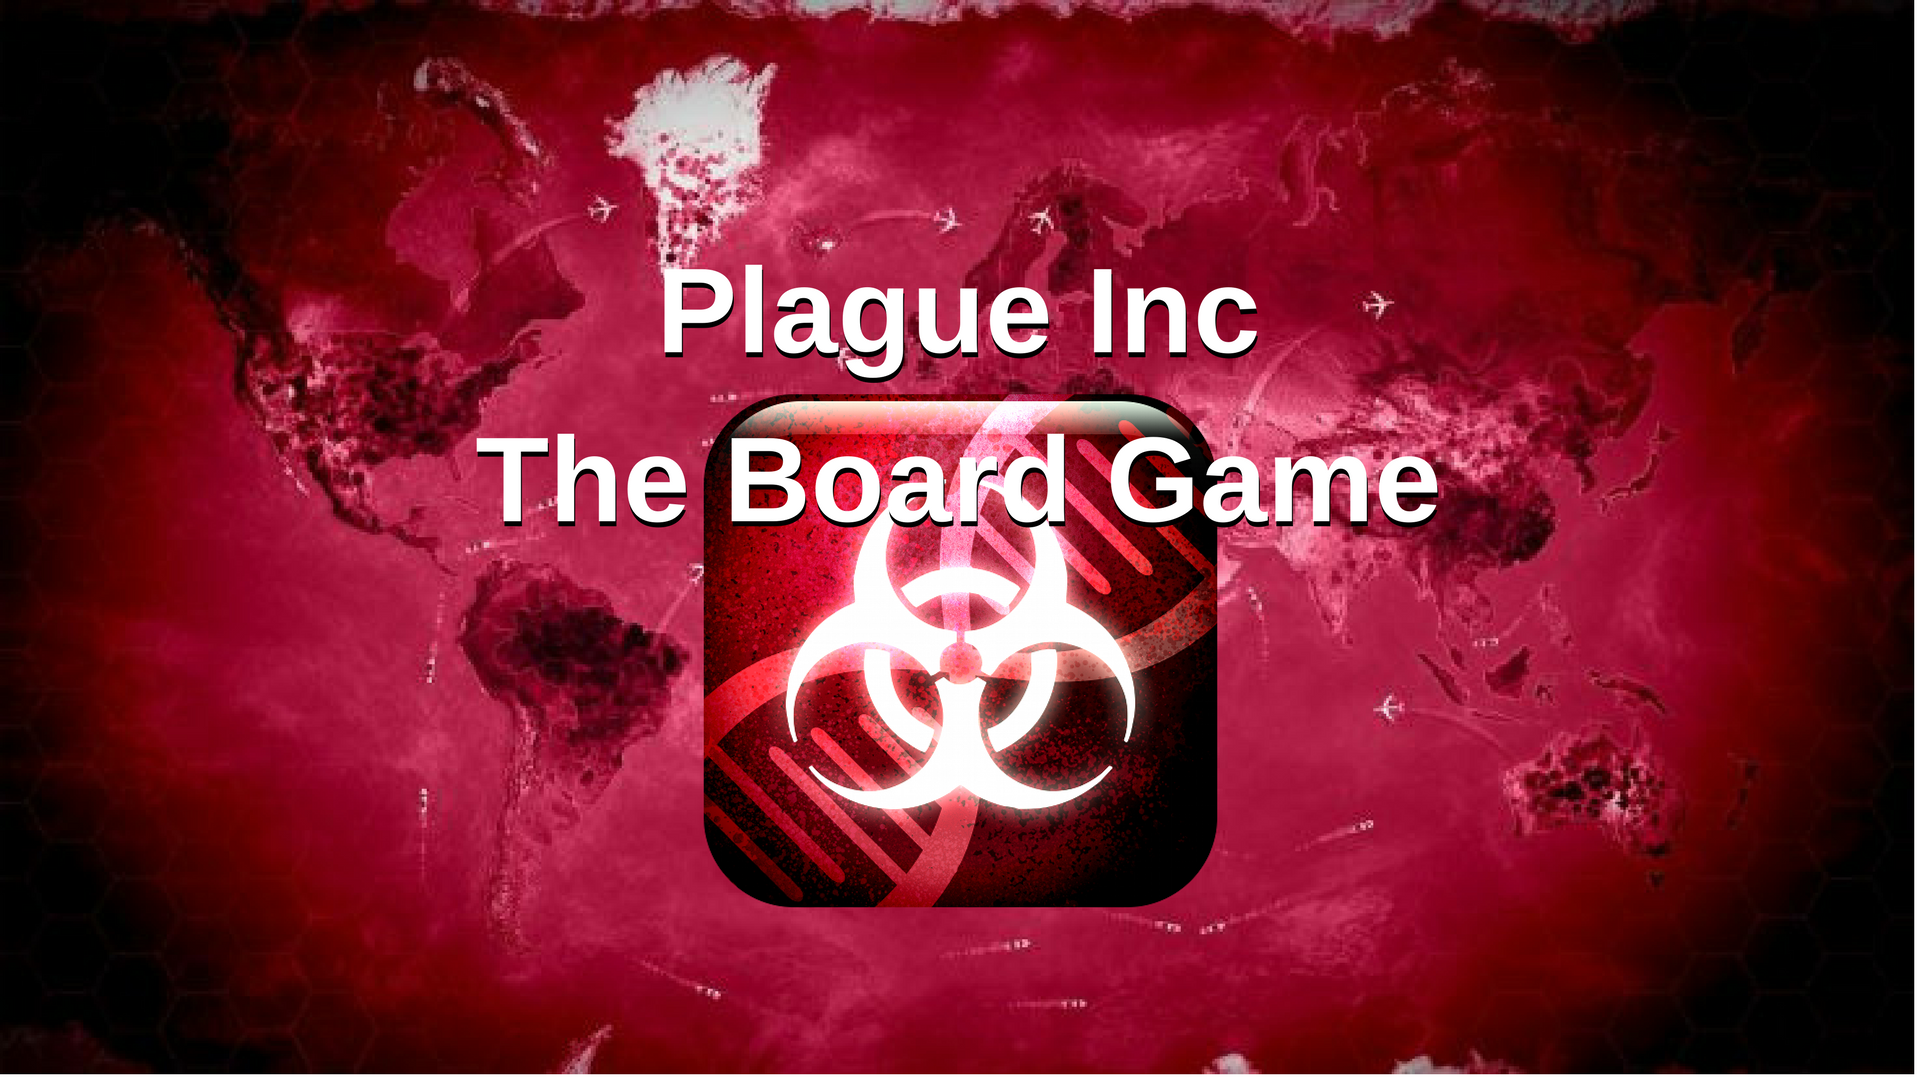 Плагуе Инк. Plague Inc настольная игра. Plague Inc Boarding game. Карточки плагуе Инк.